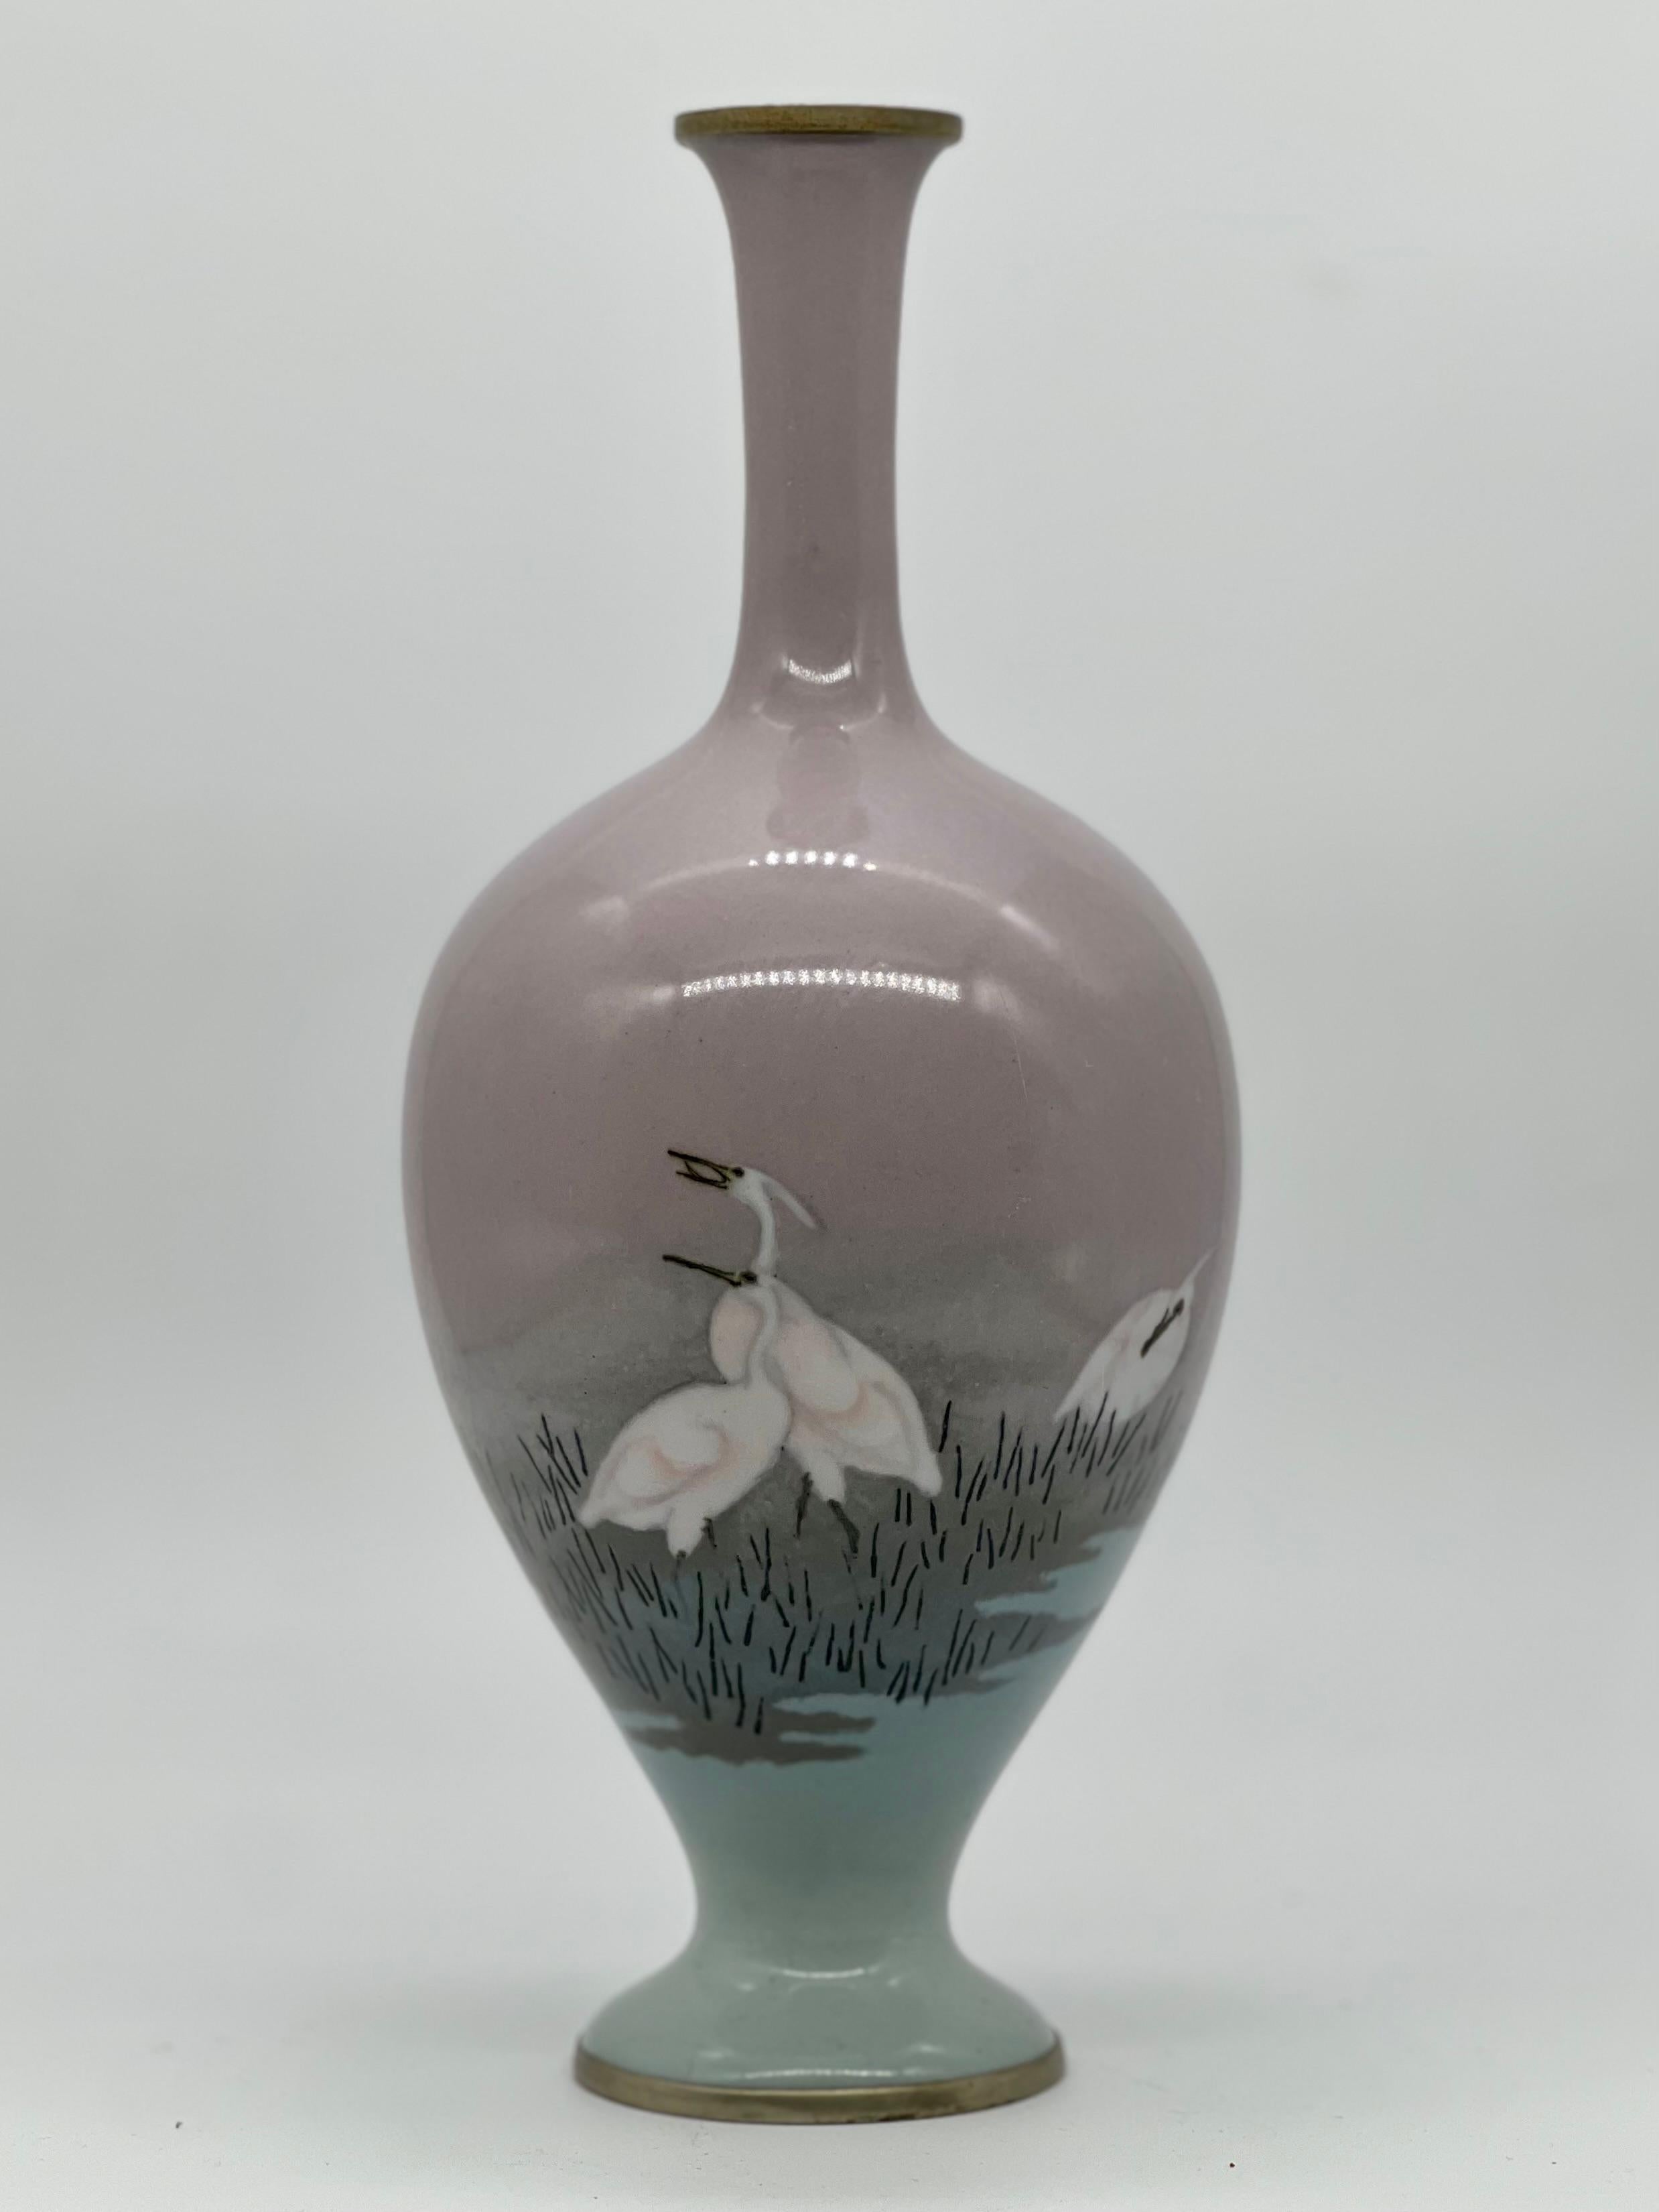 Eine prächtige Balustervase aus Cloisonné-Email und Musen, die Namikawa Sosuke zugeschrieben wird.
Meiji-Ära (1868-1912), Ende des 19. Jahrhunderts.

Diese Vase hat eine elegante klassische Form mit schlankem Hals und ausgestellter Mündung über